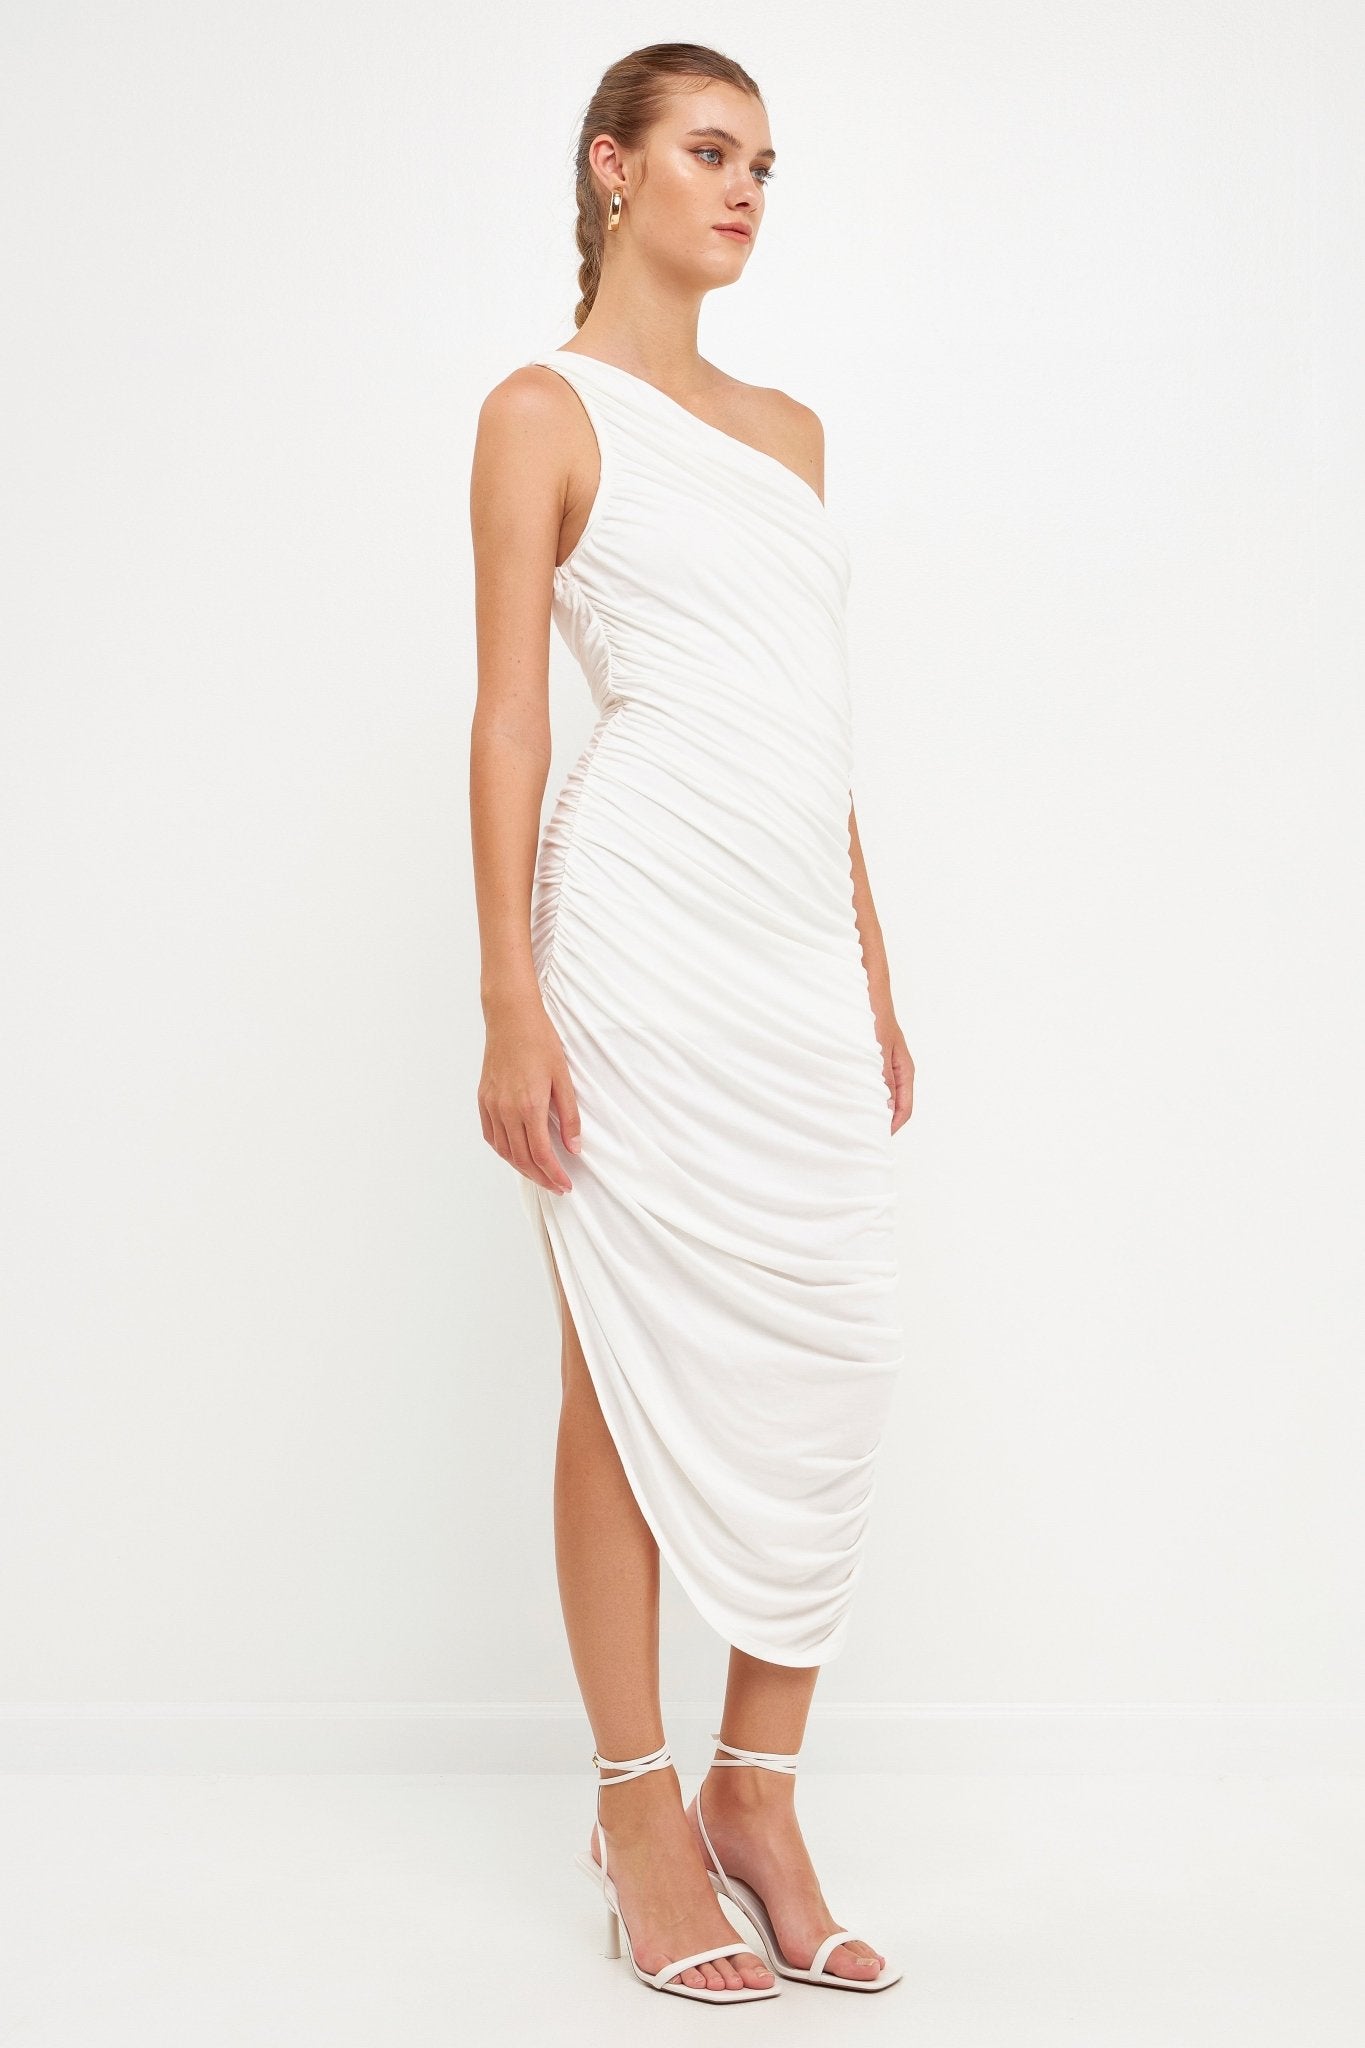 Asymmetrical Jersey Dress - Lush Lemon - Women's Clothing - Endless Rose - 192934513791